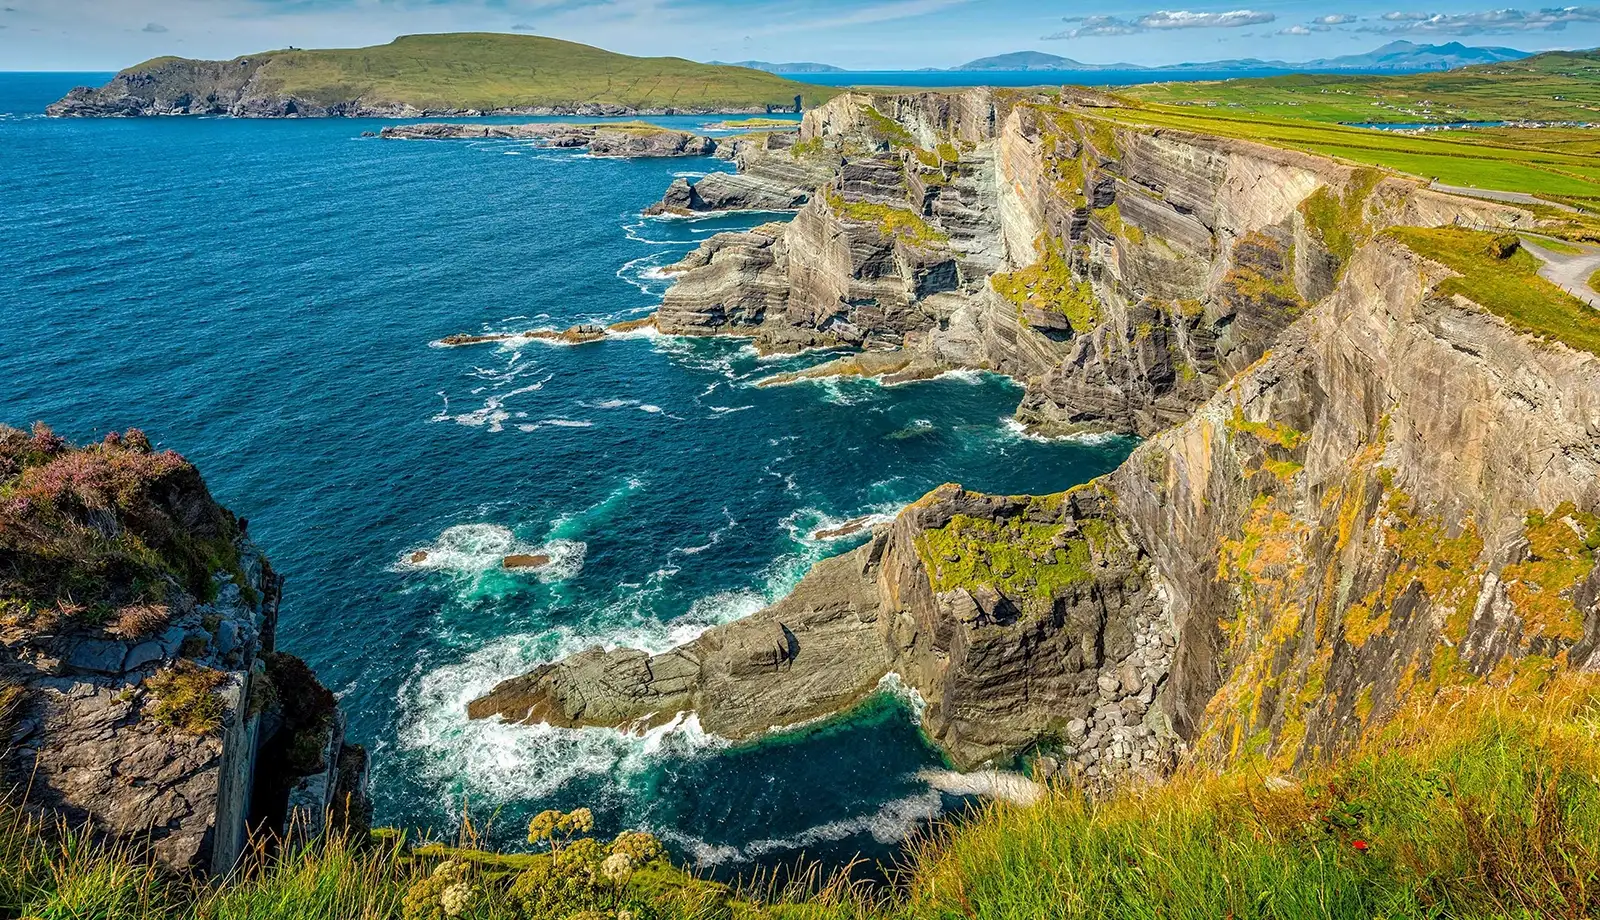 Trọn bộ kinh nghiệm du lịch Ireland chi tiết nhất